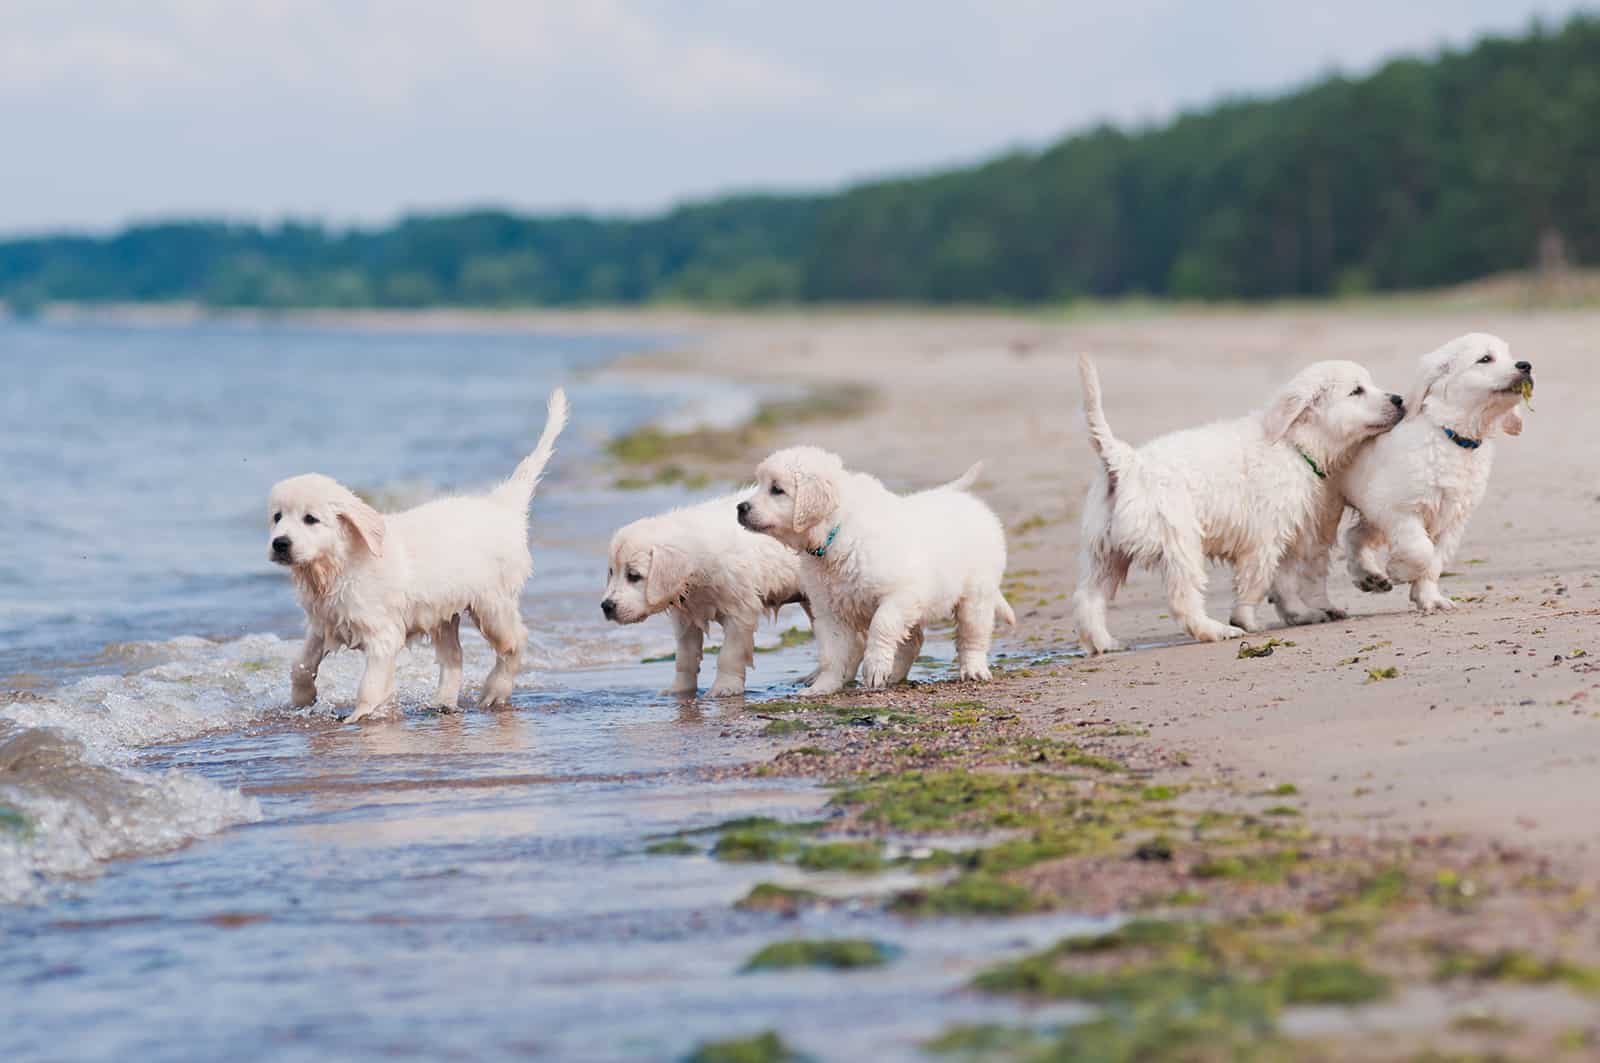 adorable golden retriever puppies on the beach